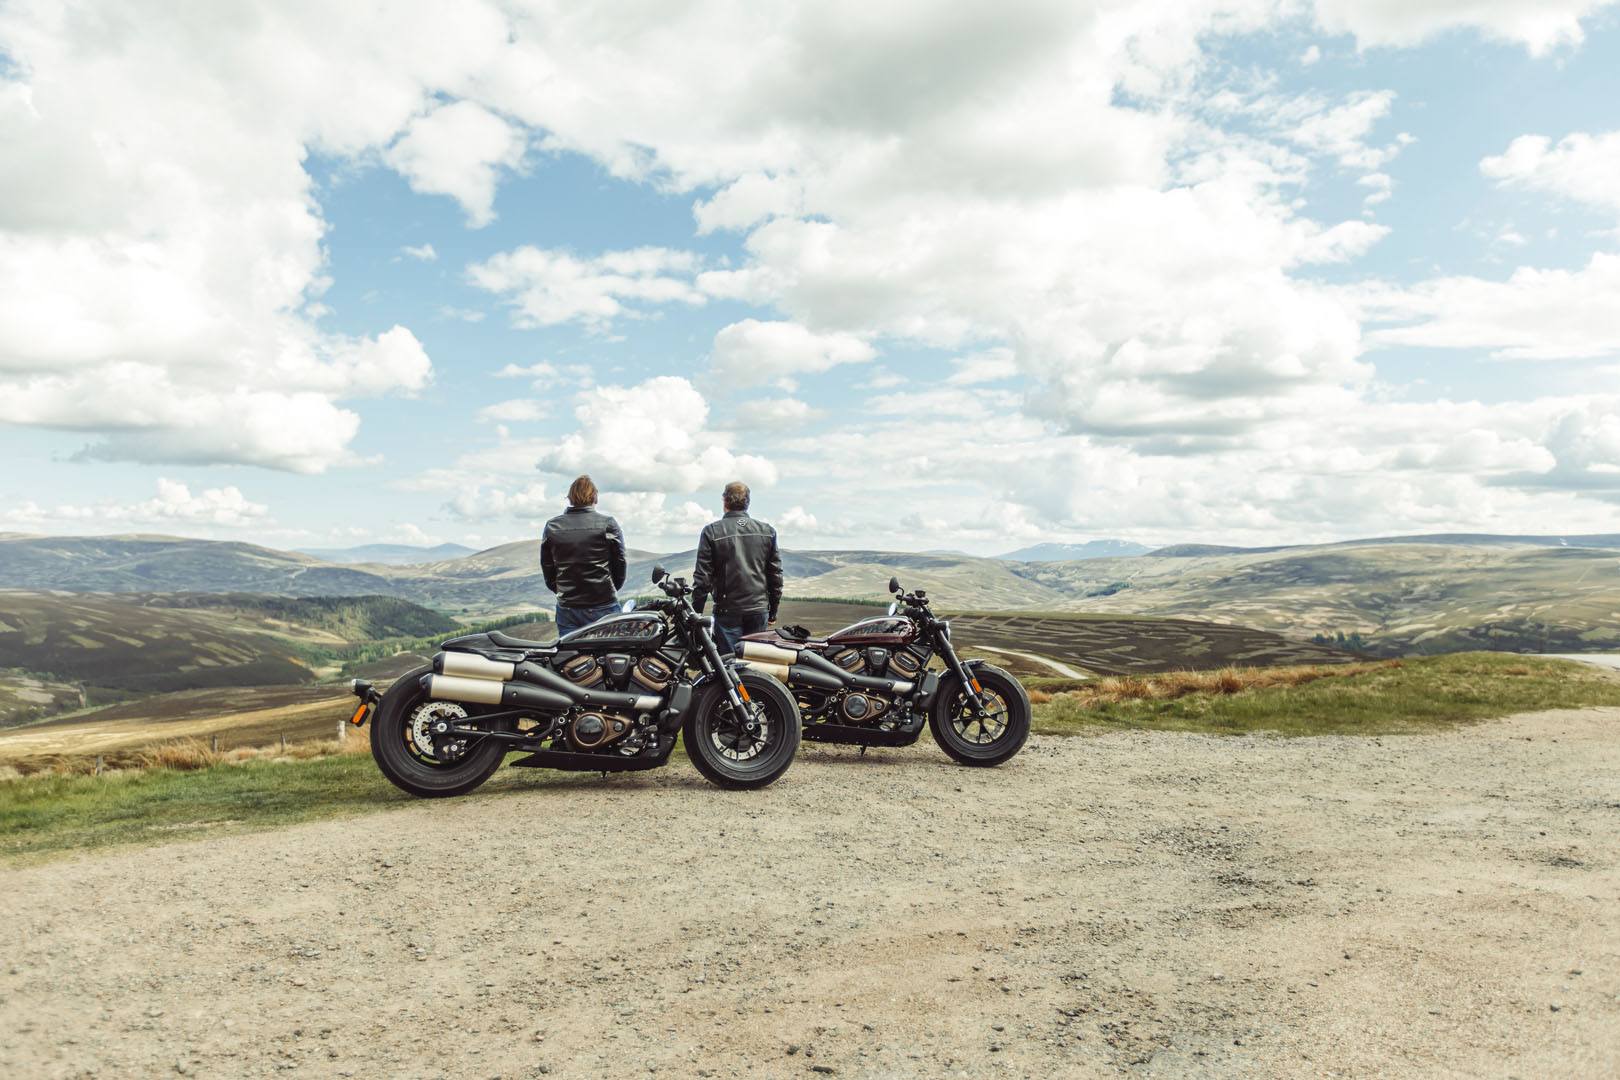 2021 Harley-Davidson Sportster® S in Loveland, Colorado - Photo 13